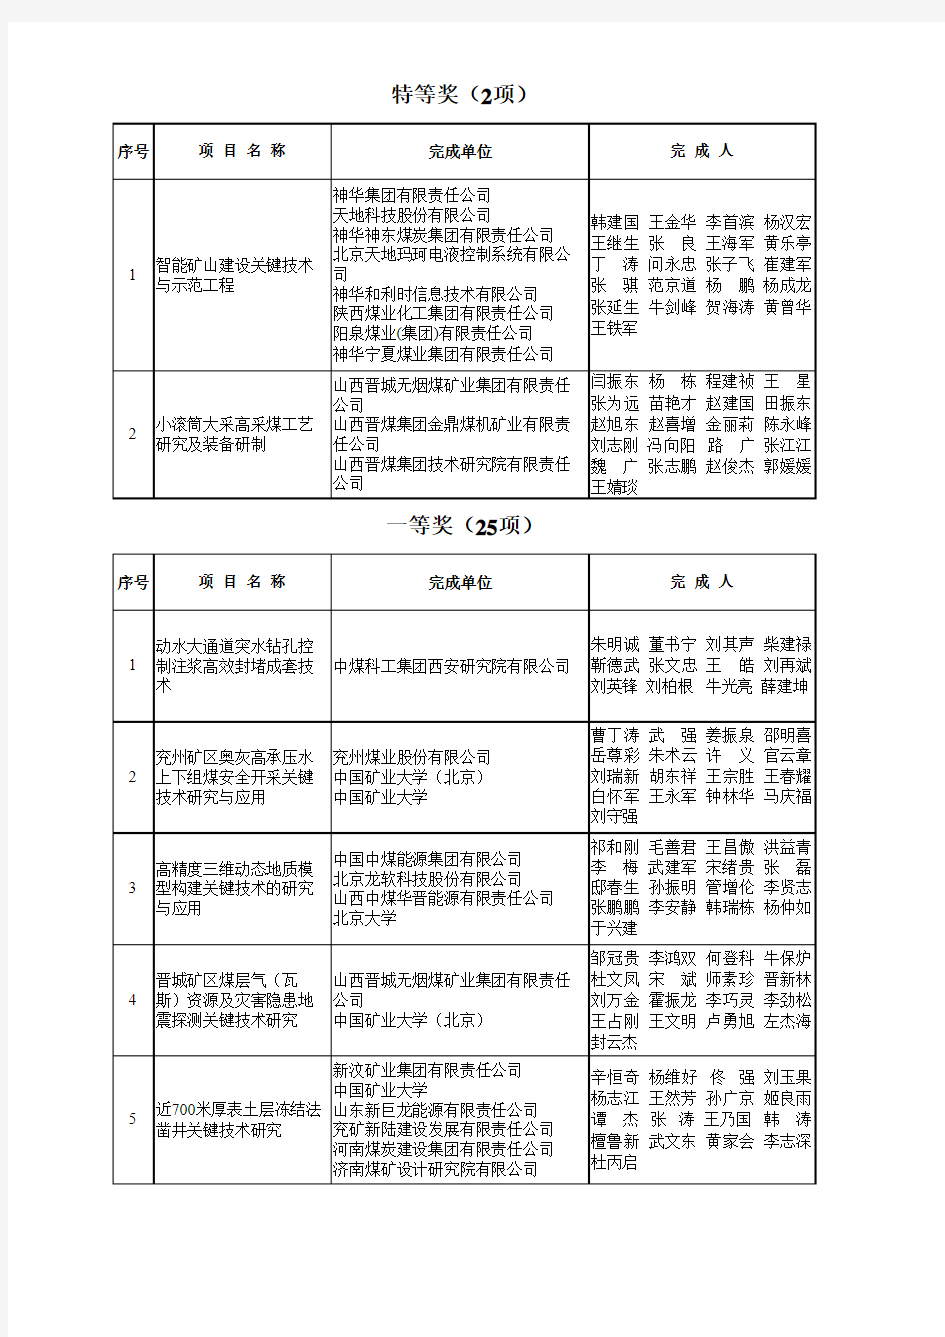 2014年度中国煤炭工业协会科技进步奖公示名单